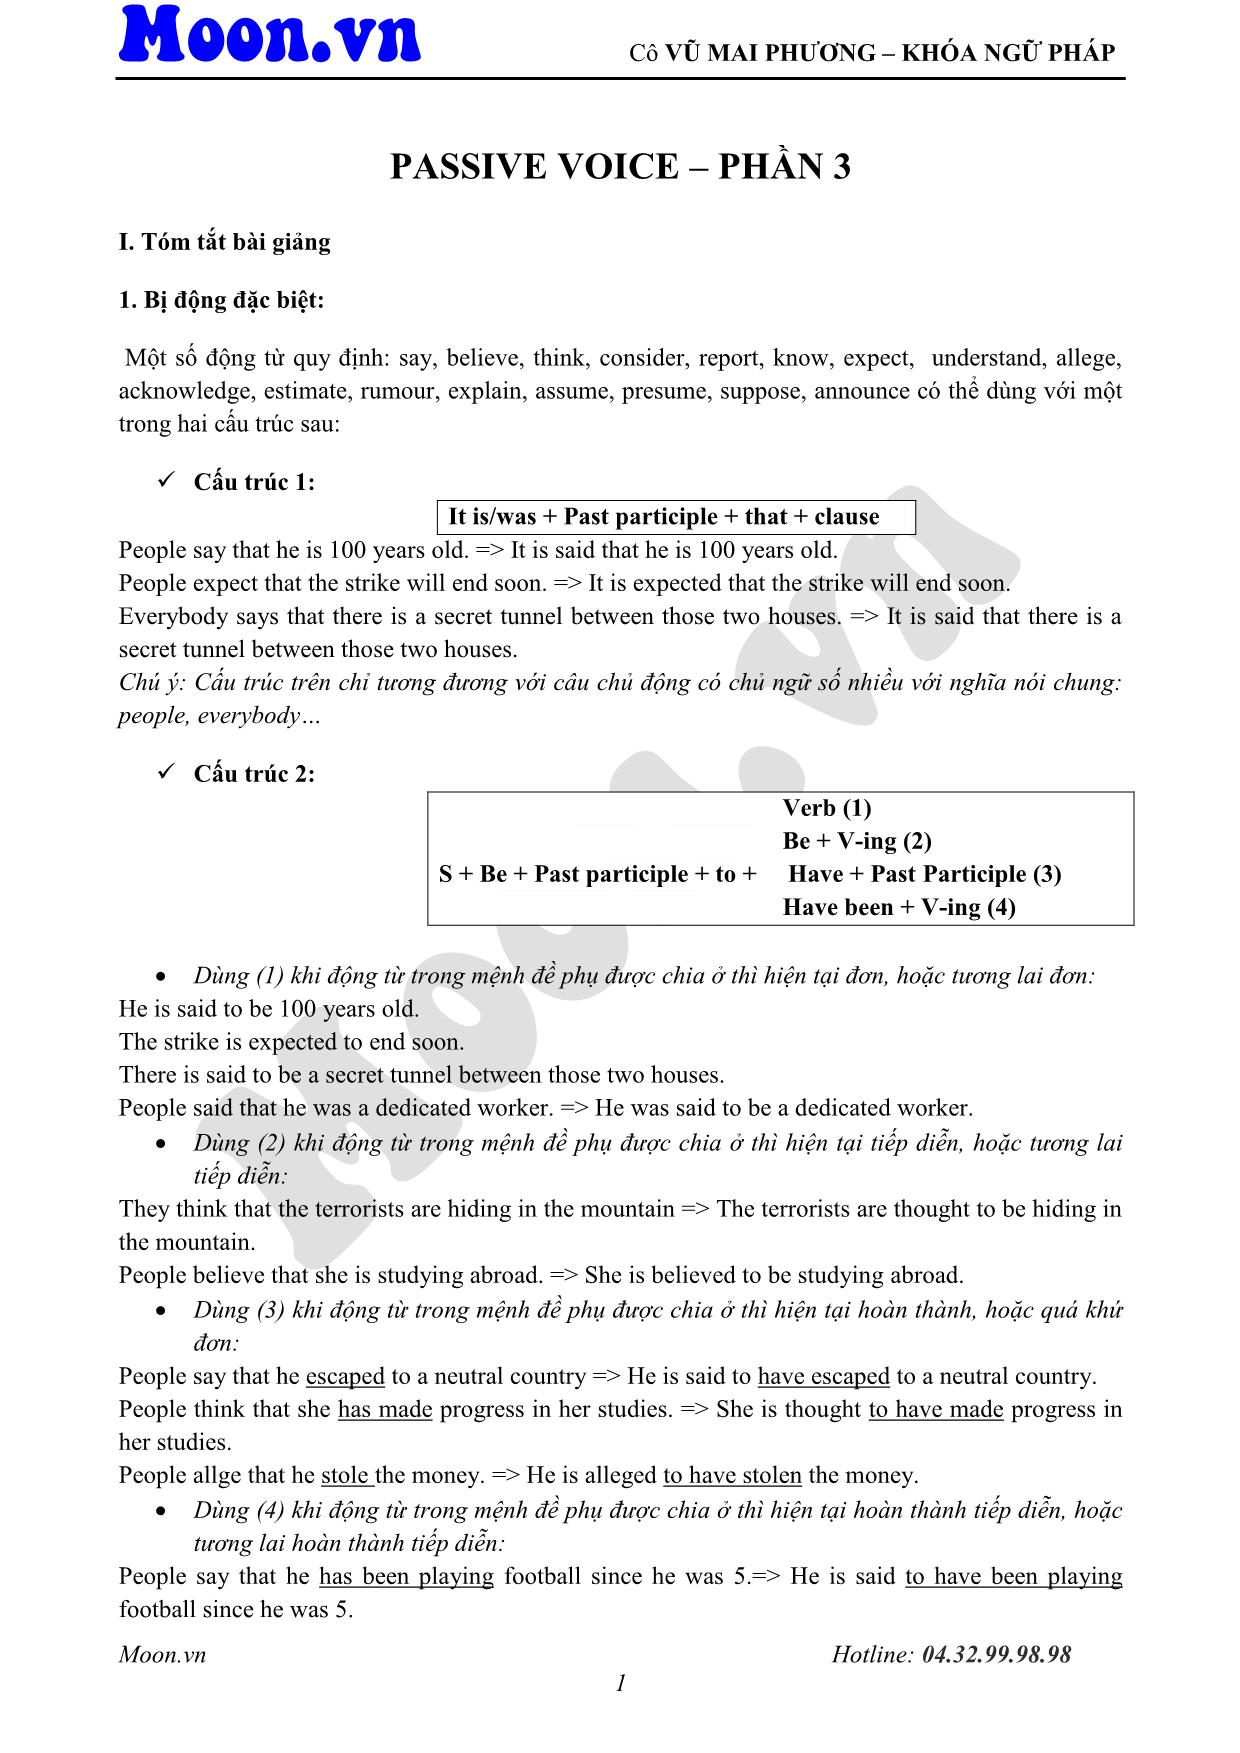 Giáo trình Tiếng Anh - Cấu trúc câu chủ động, bị động (Phần 3) trang 1